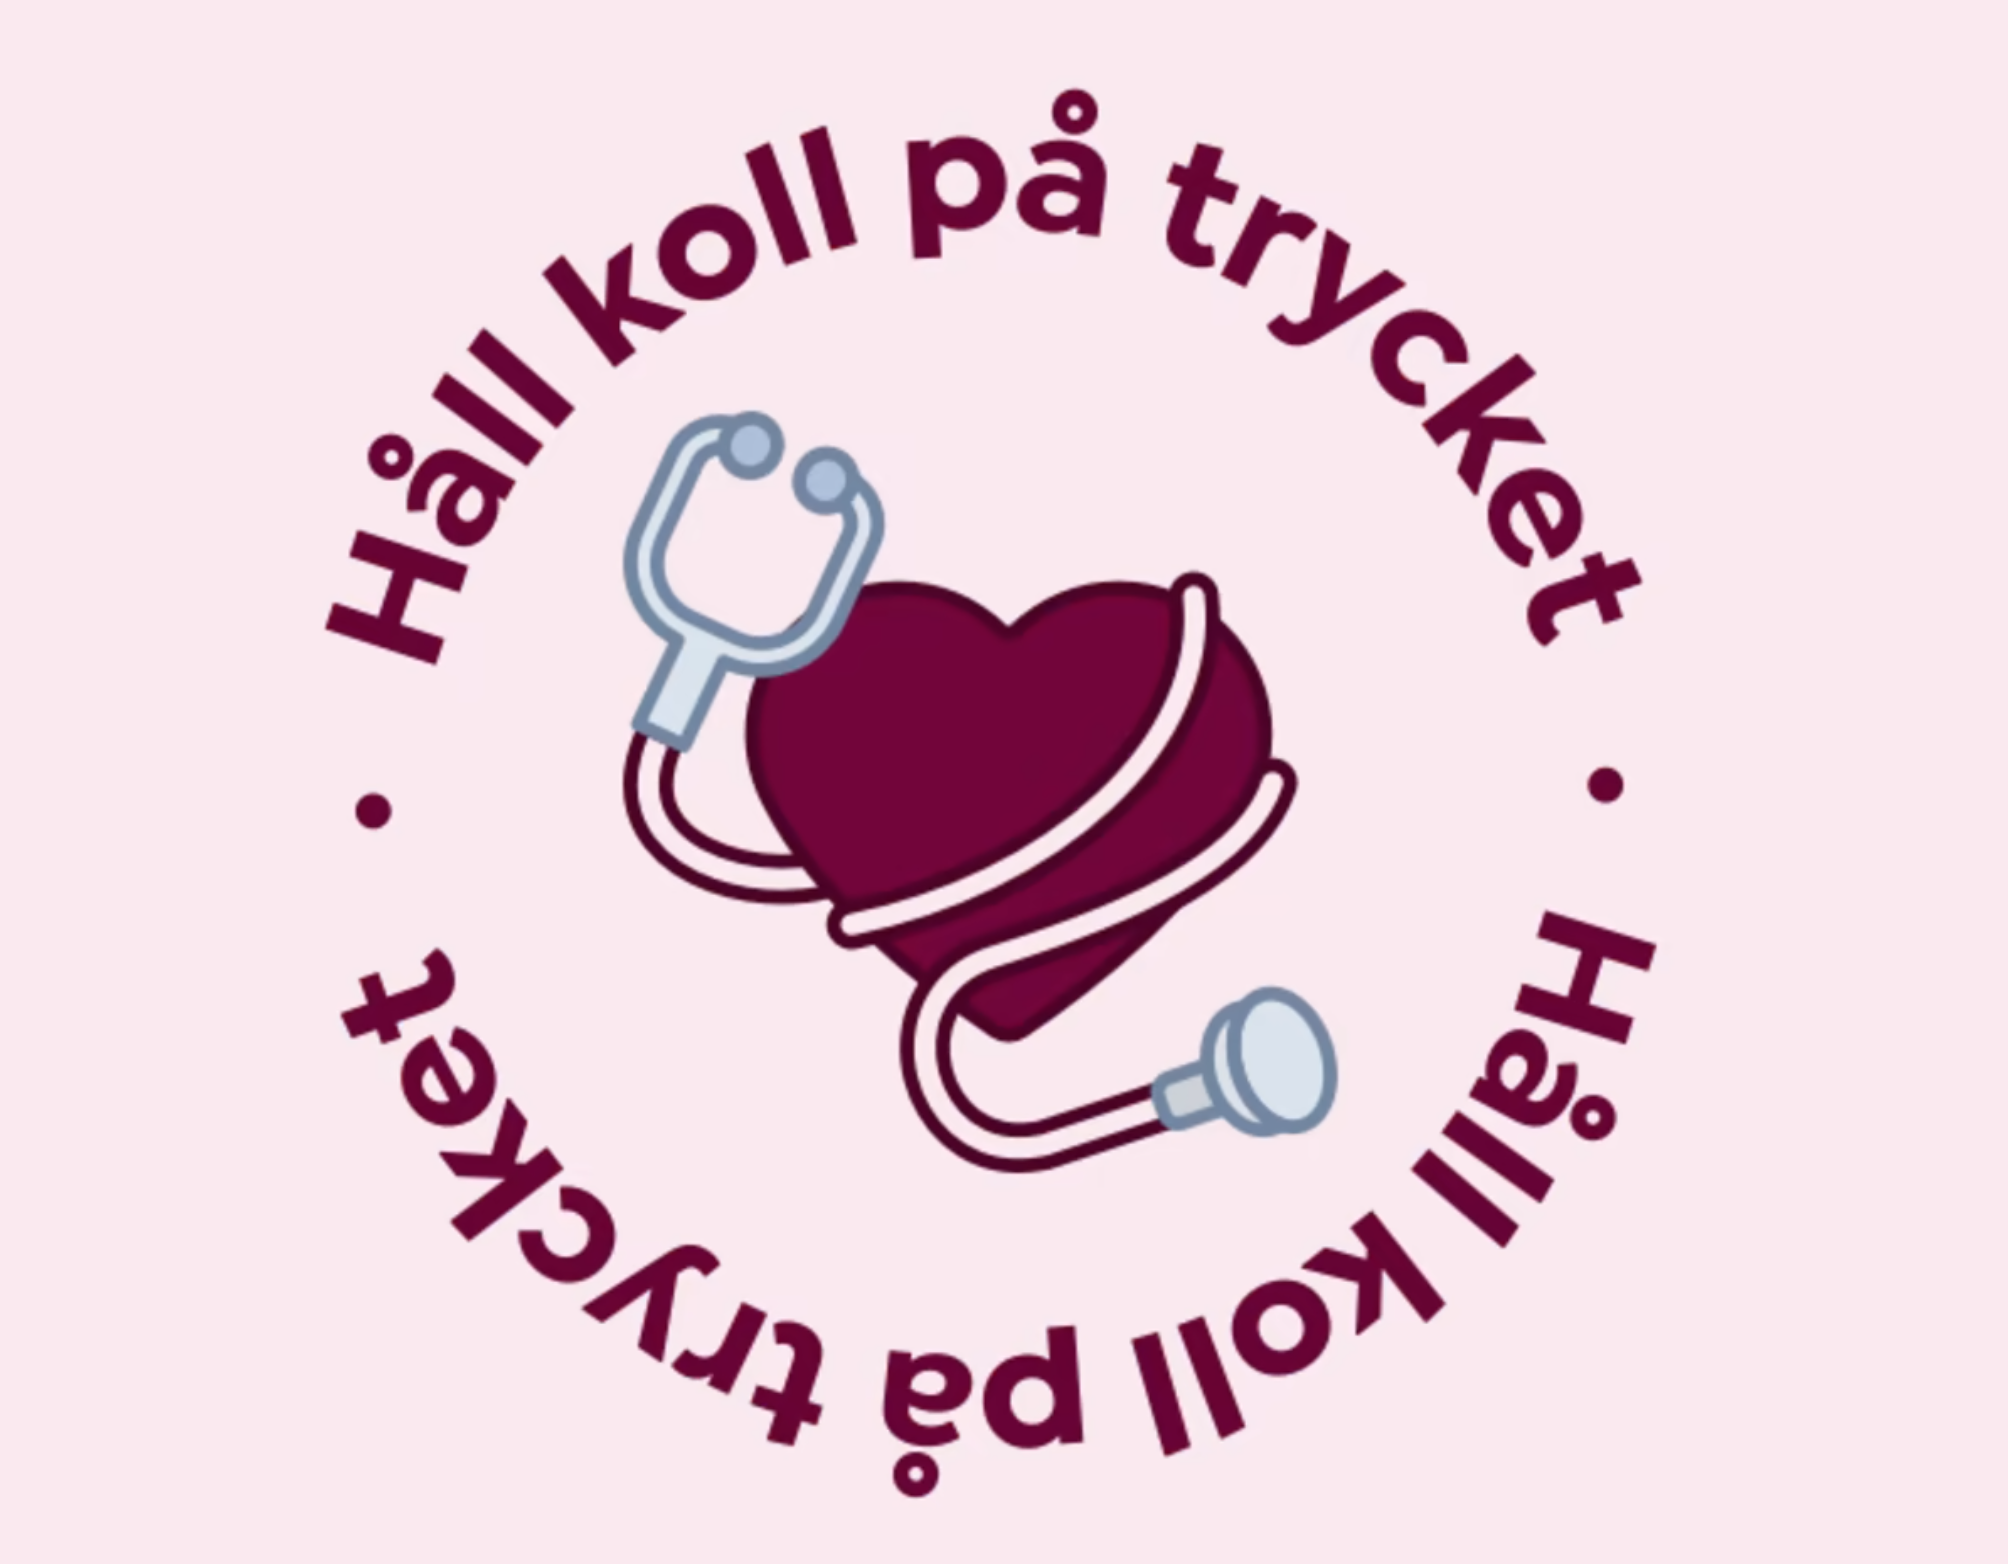 Logotyp med ett hjärta med ett stetoskop, runt om ikonen står en text som lyder "Håll koll på trycket", allt mot en ljusrosa bakgrund.